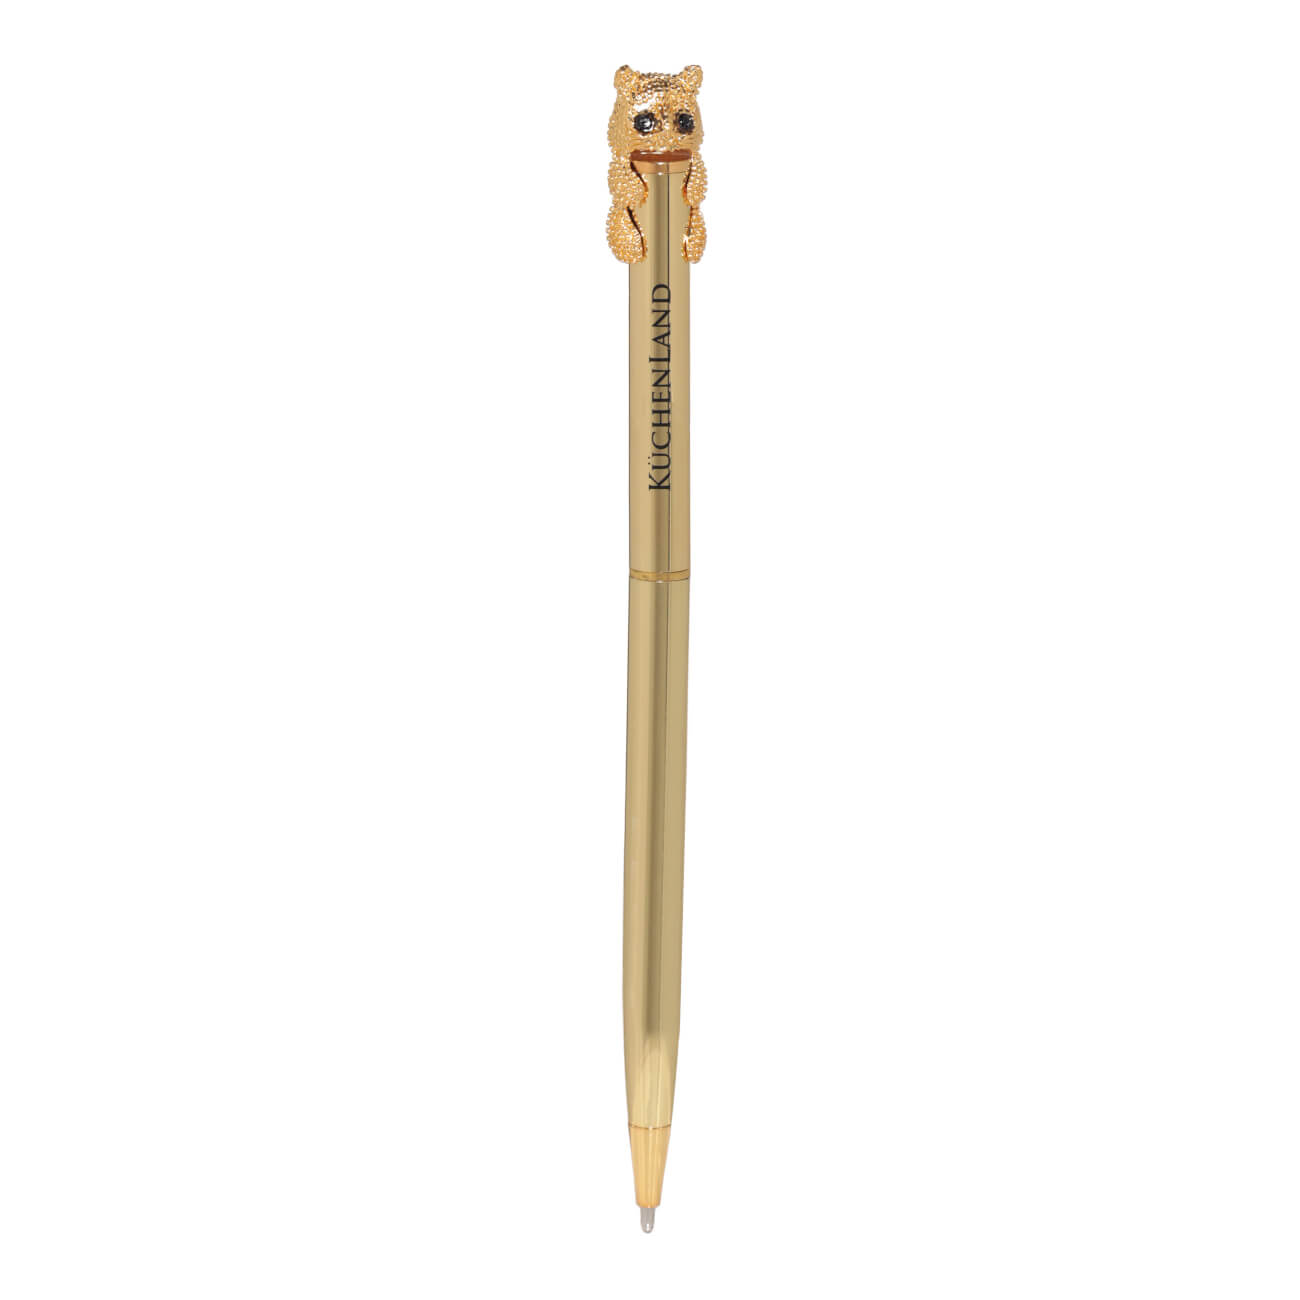 Ручка шариковая, 14 см, с фигуркой, золотистая, Кот, Draw figure classic ручка шариковая